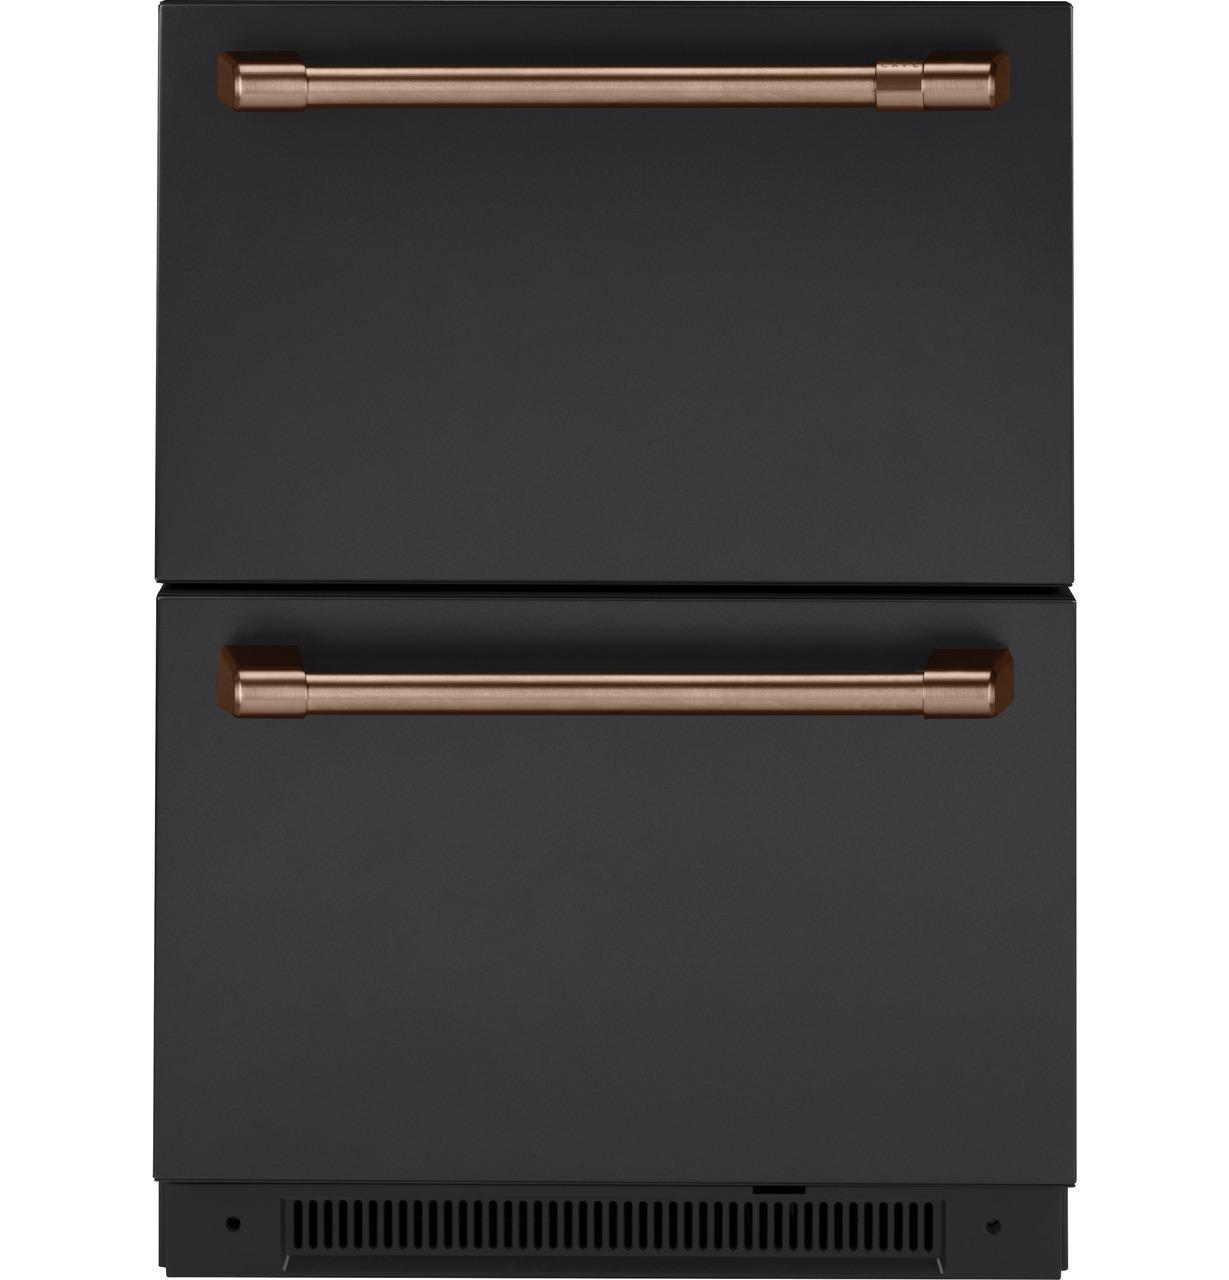 Cafe Caf(eback)™ 5.7 Cu. Ft. Built-In Dual-Drawer Refrigerator